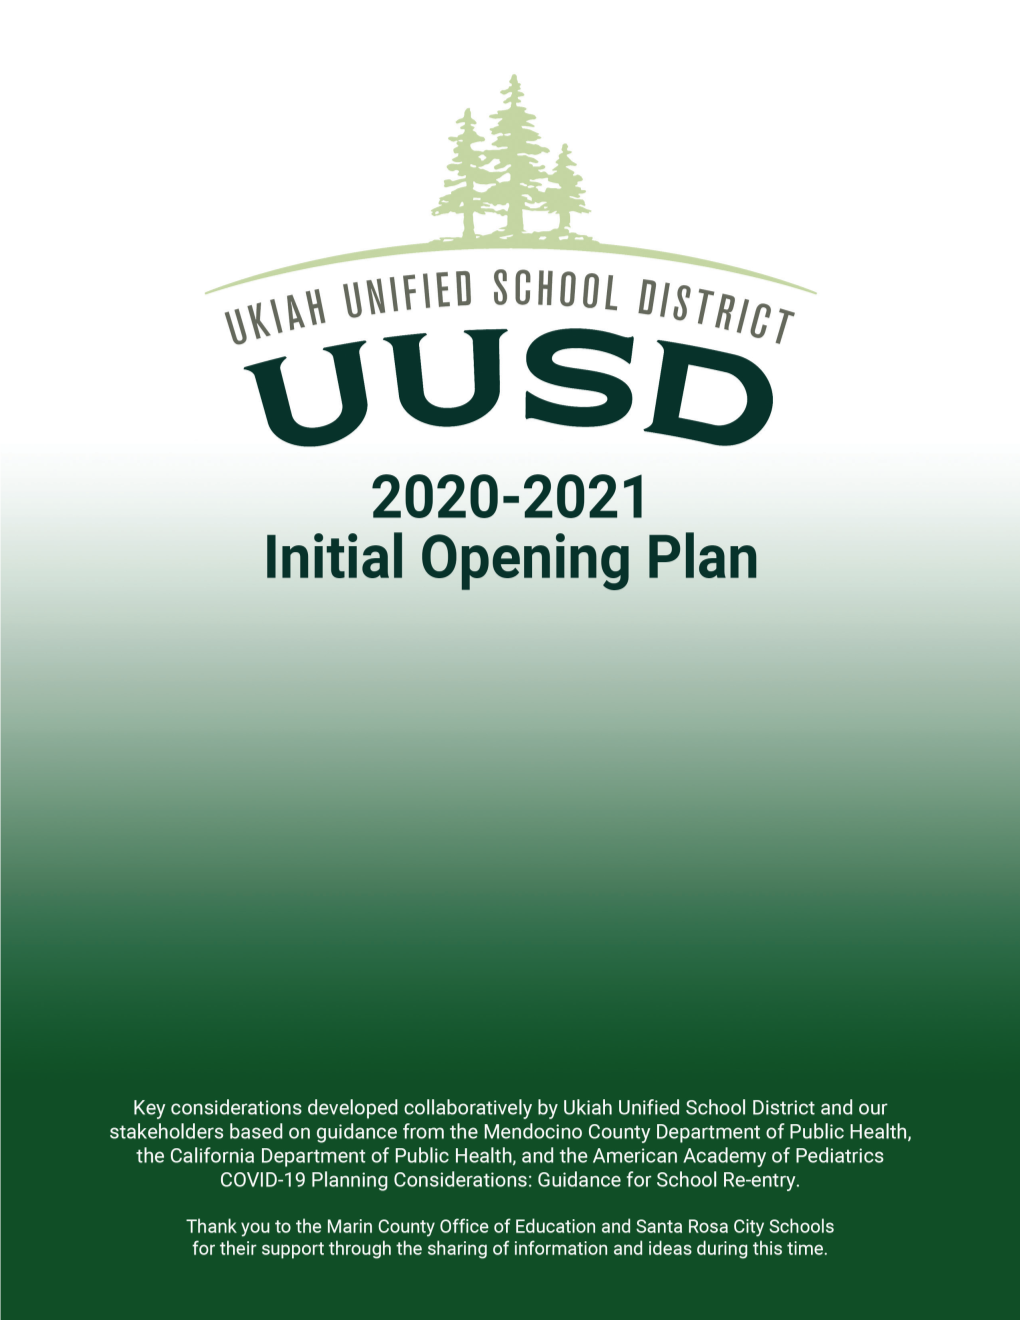 Initial 2020/21 Opening Plan